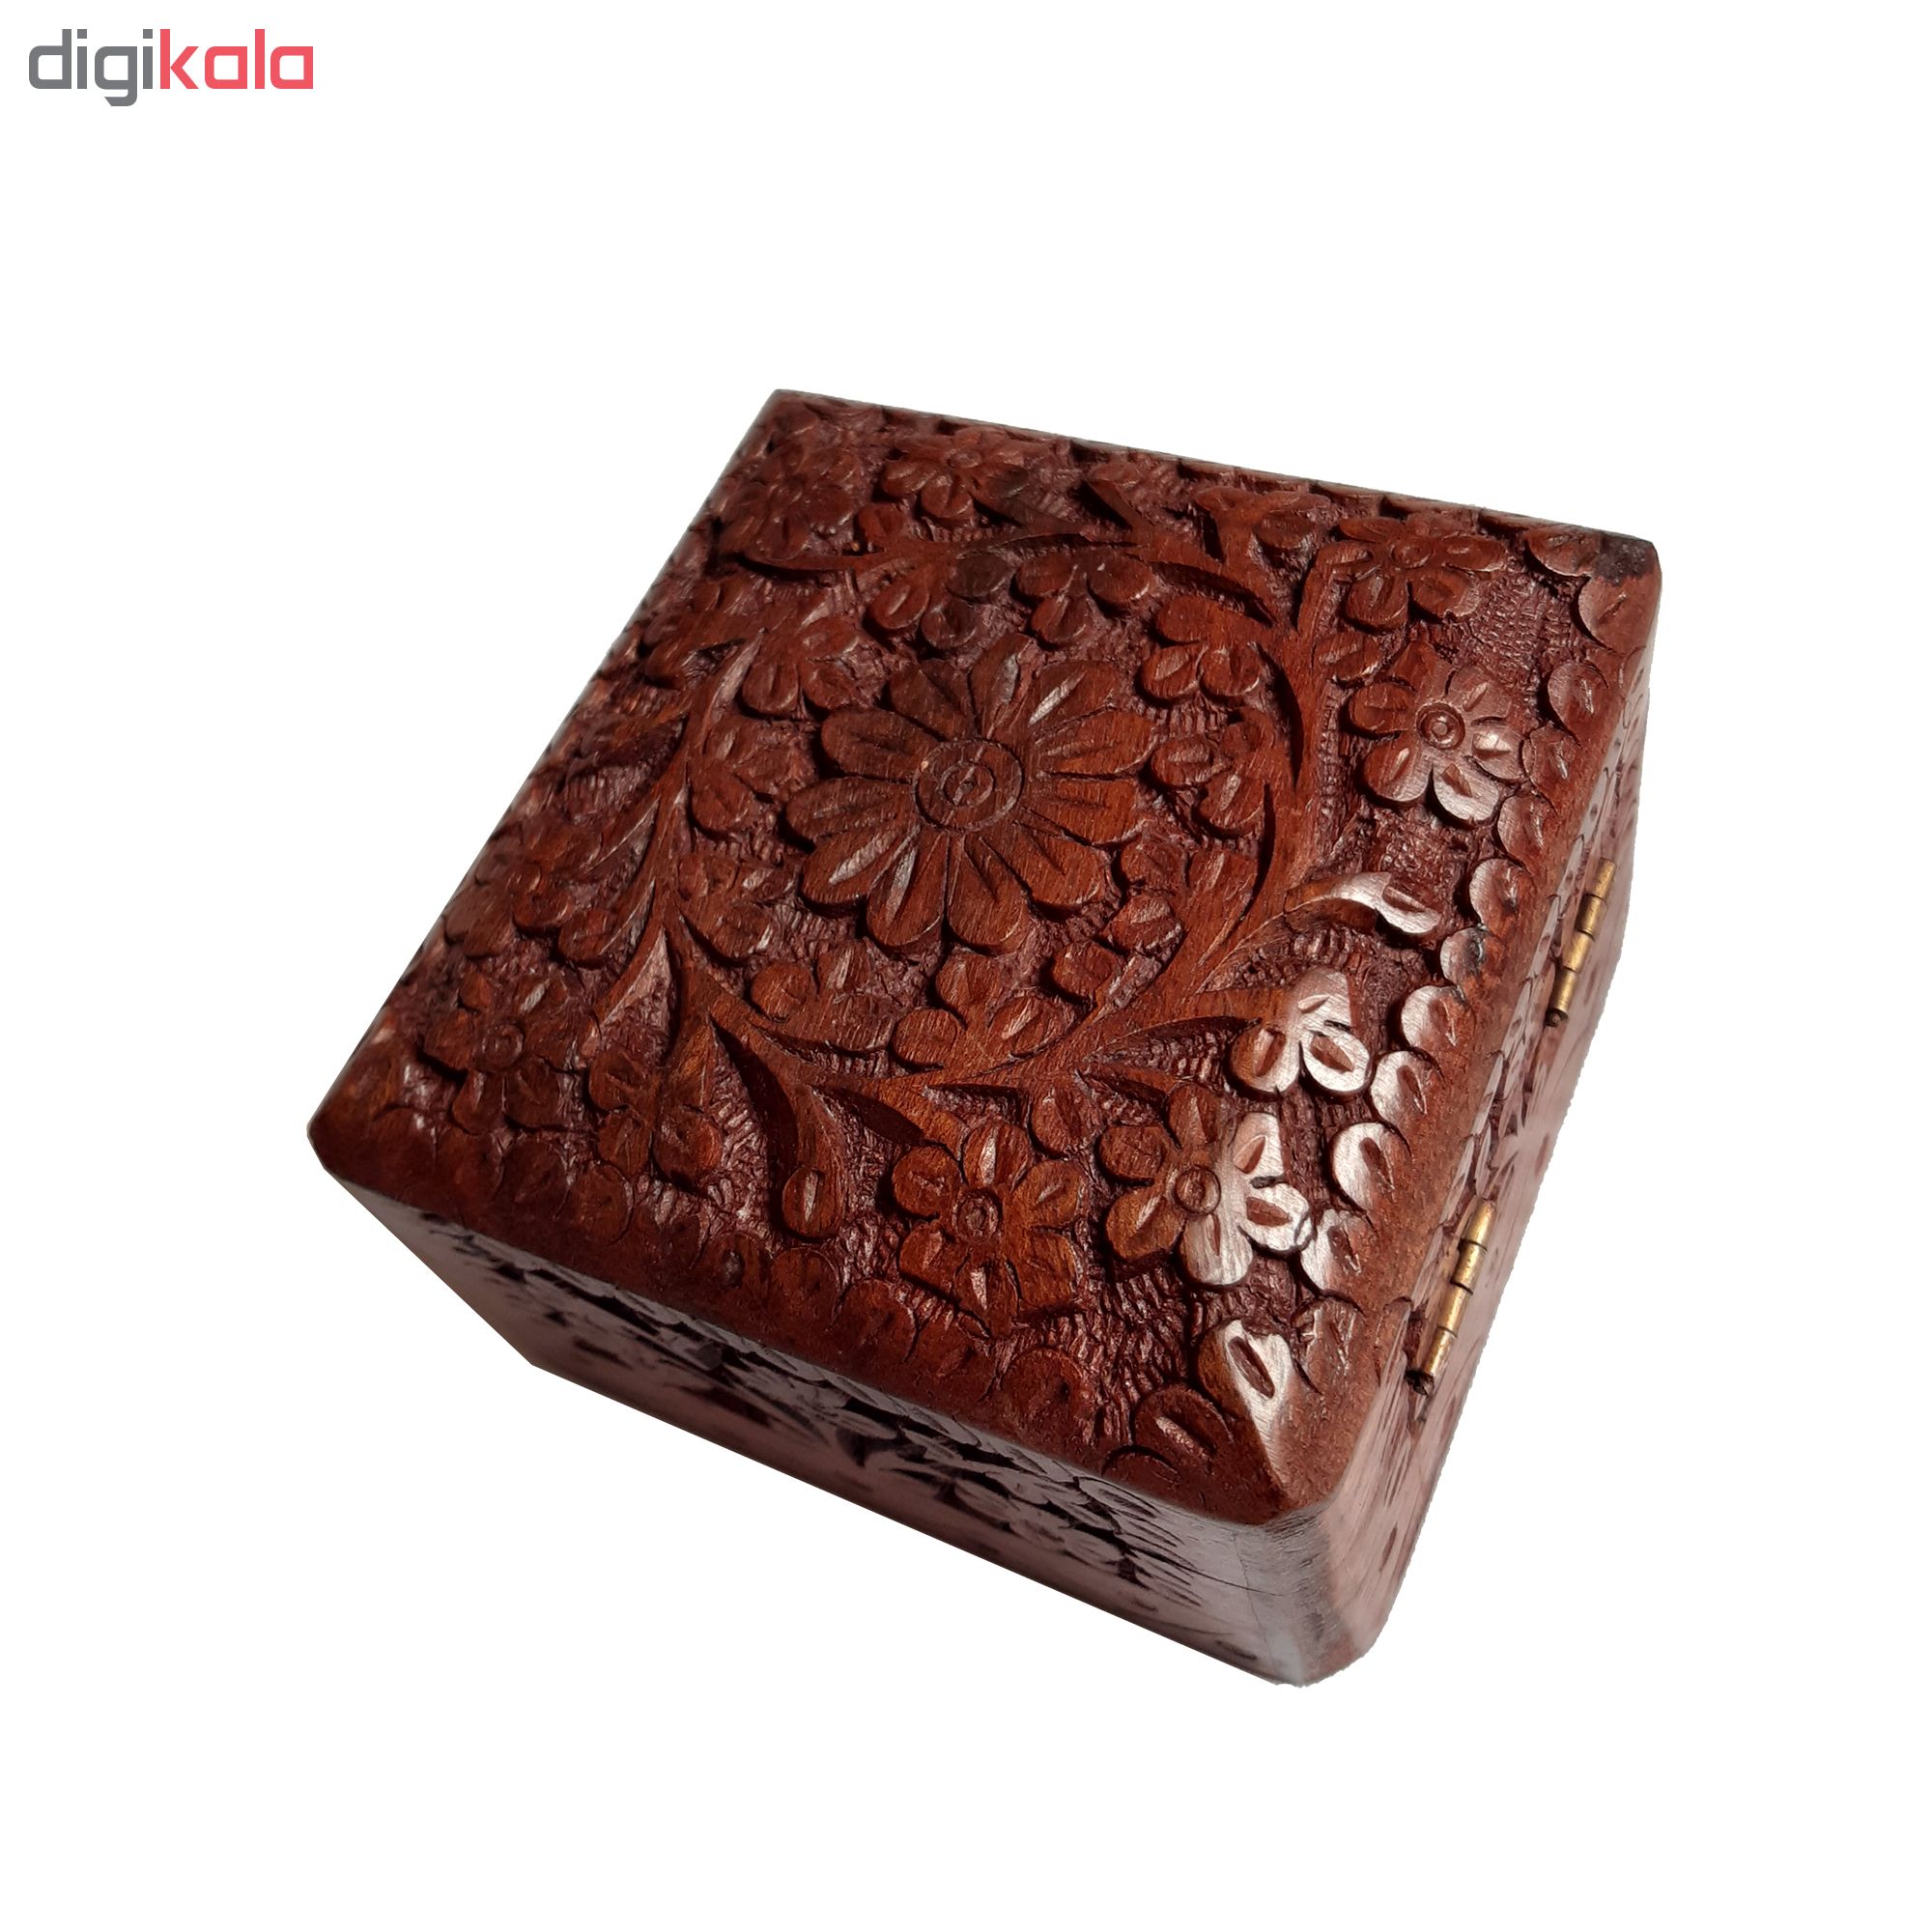 Handmade wooden carving gift box, HF-1010 MODEL